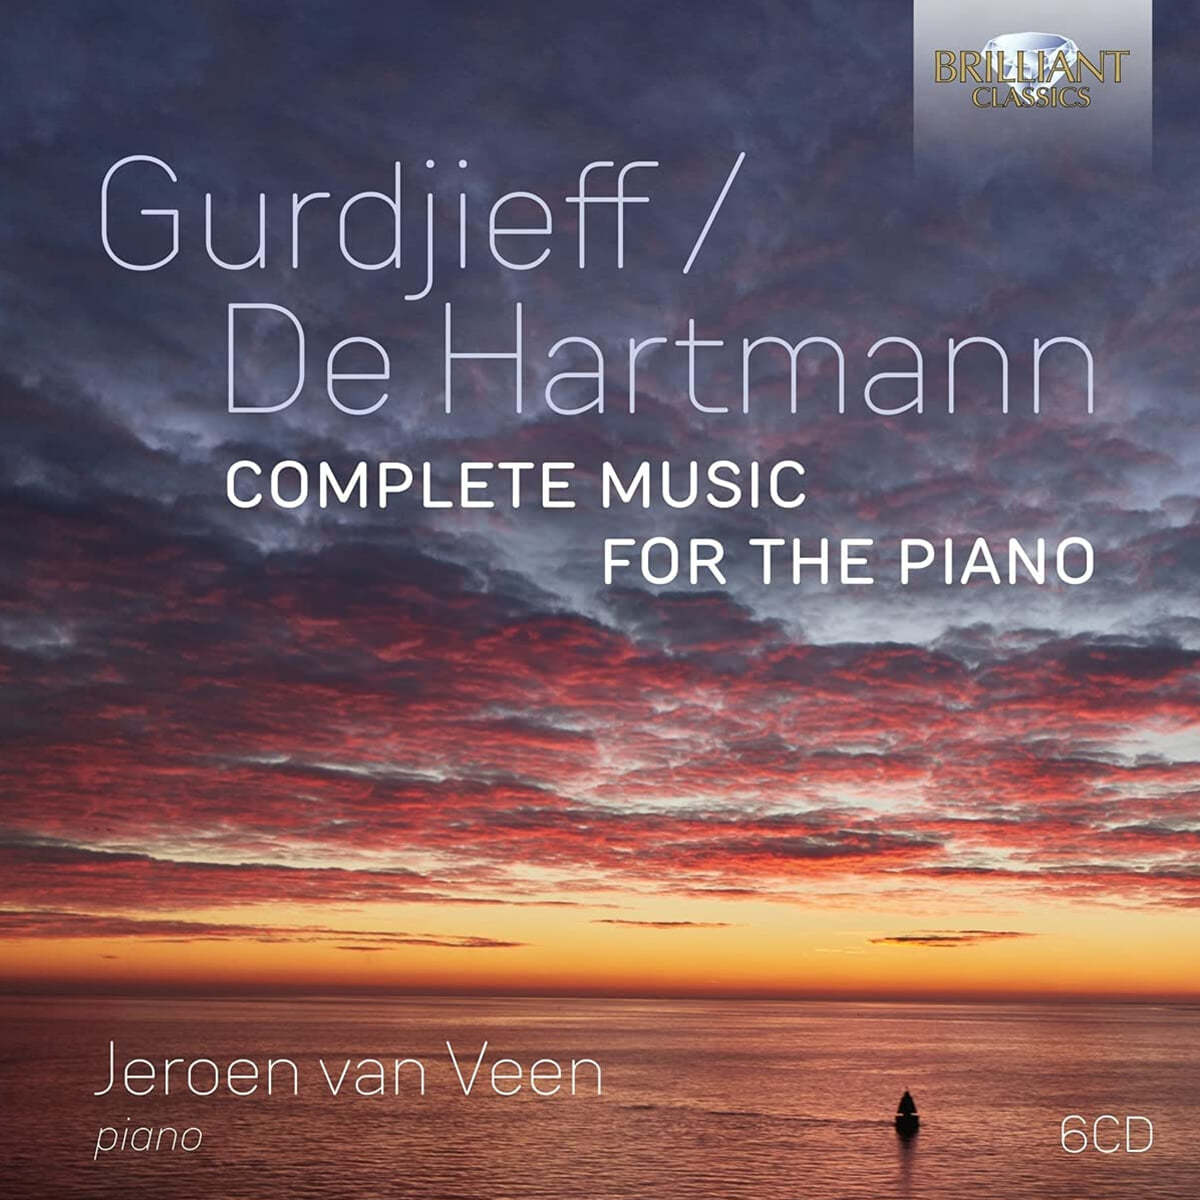 Jeroen van Veen 구르디예프 / 데 하르트만: 피아노 작품 전곡 (Gurdjieff / De Hartman: Complete Music for the Piano) 